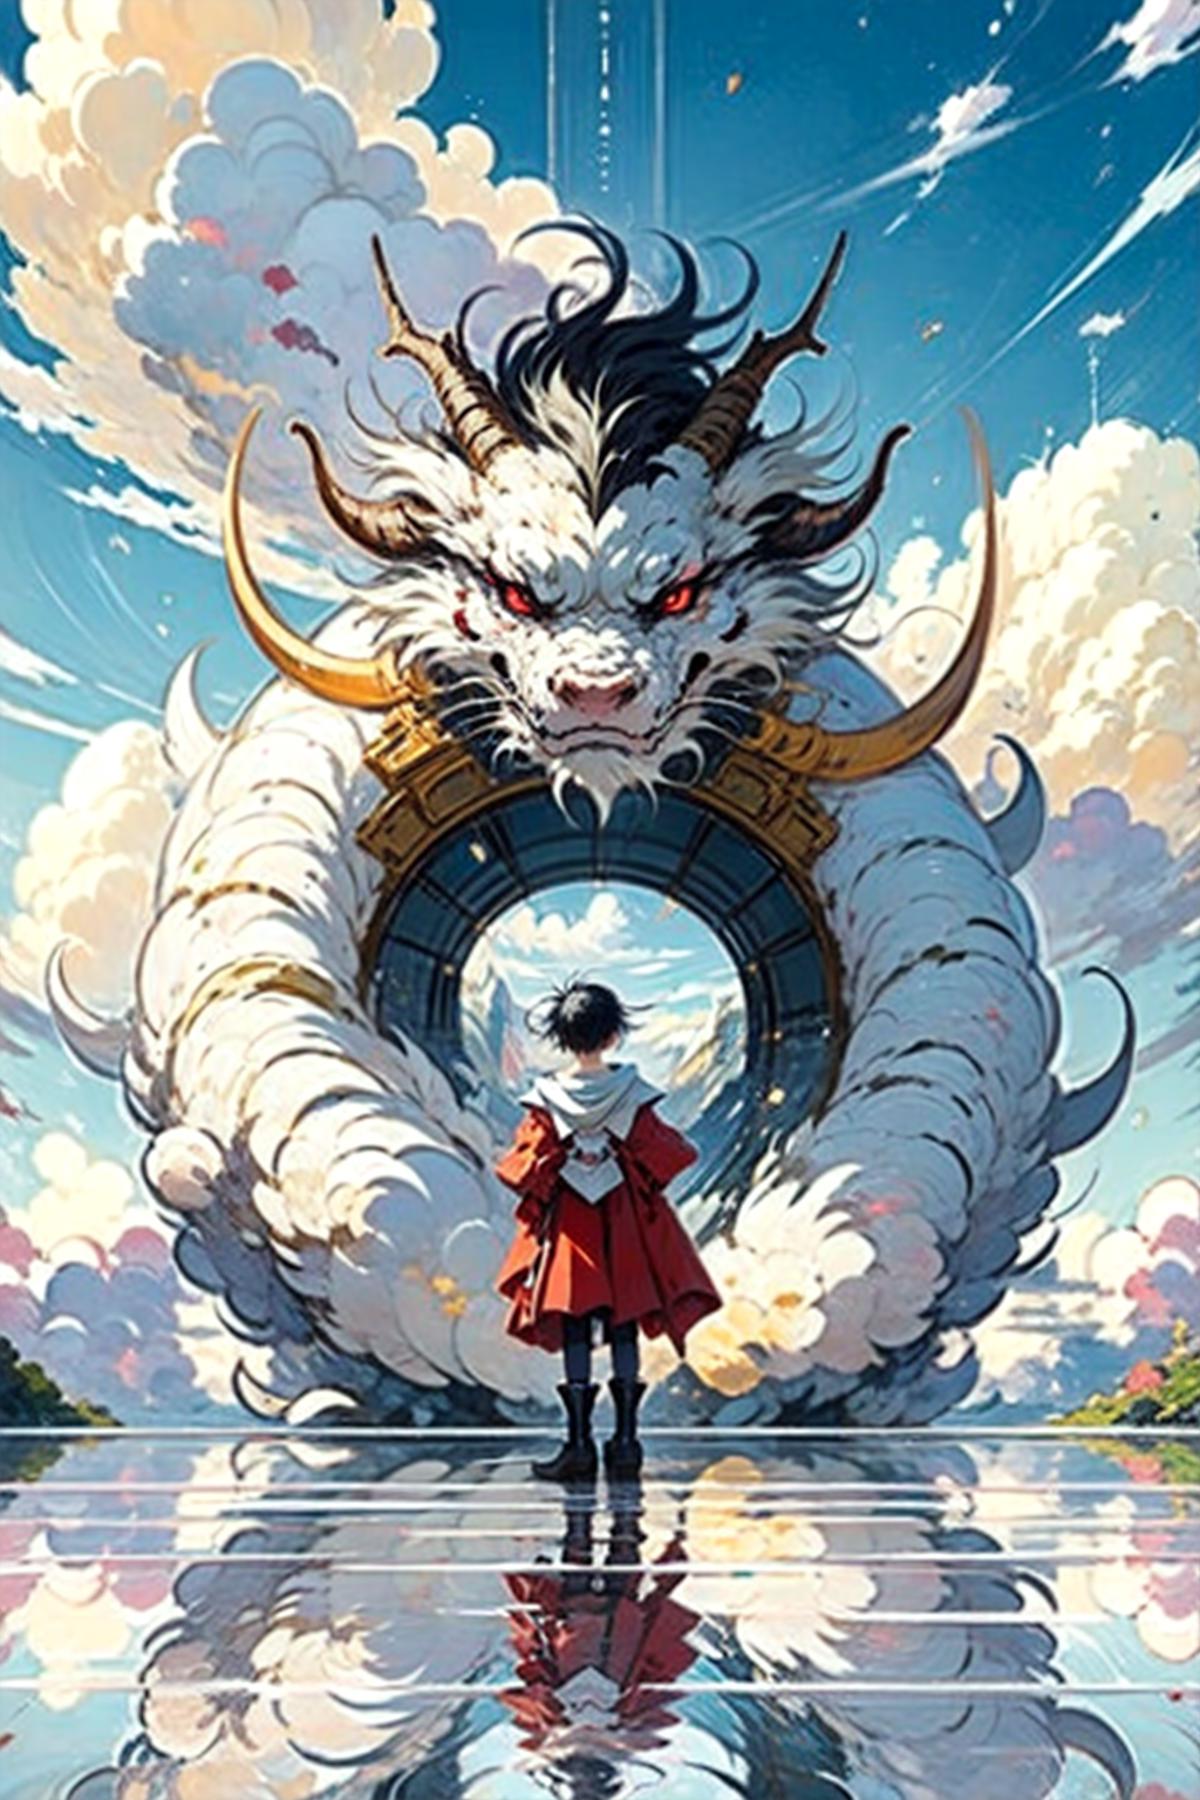 东方巨龙 Oriental giant dragon image by superskirv